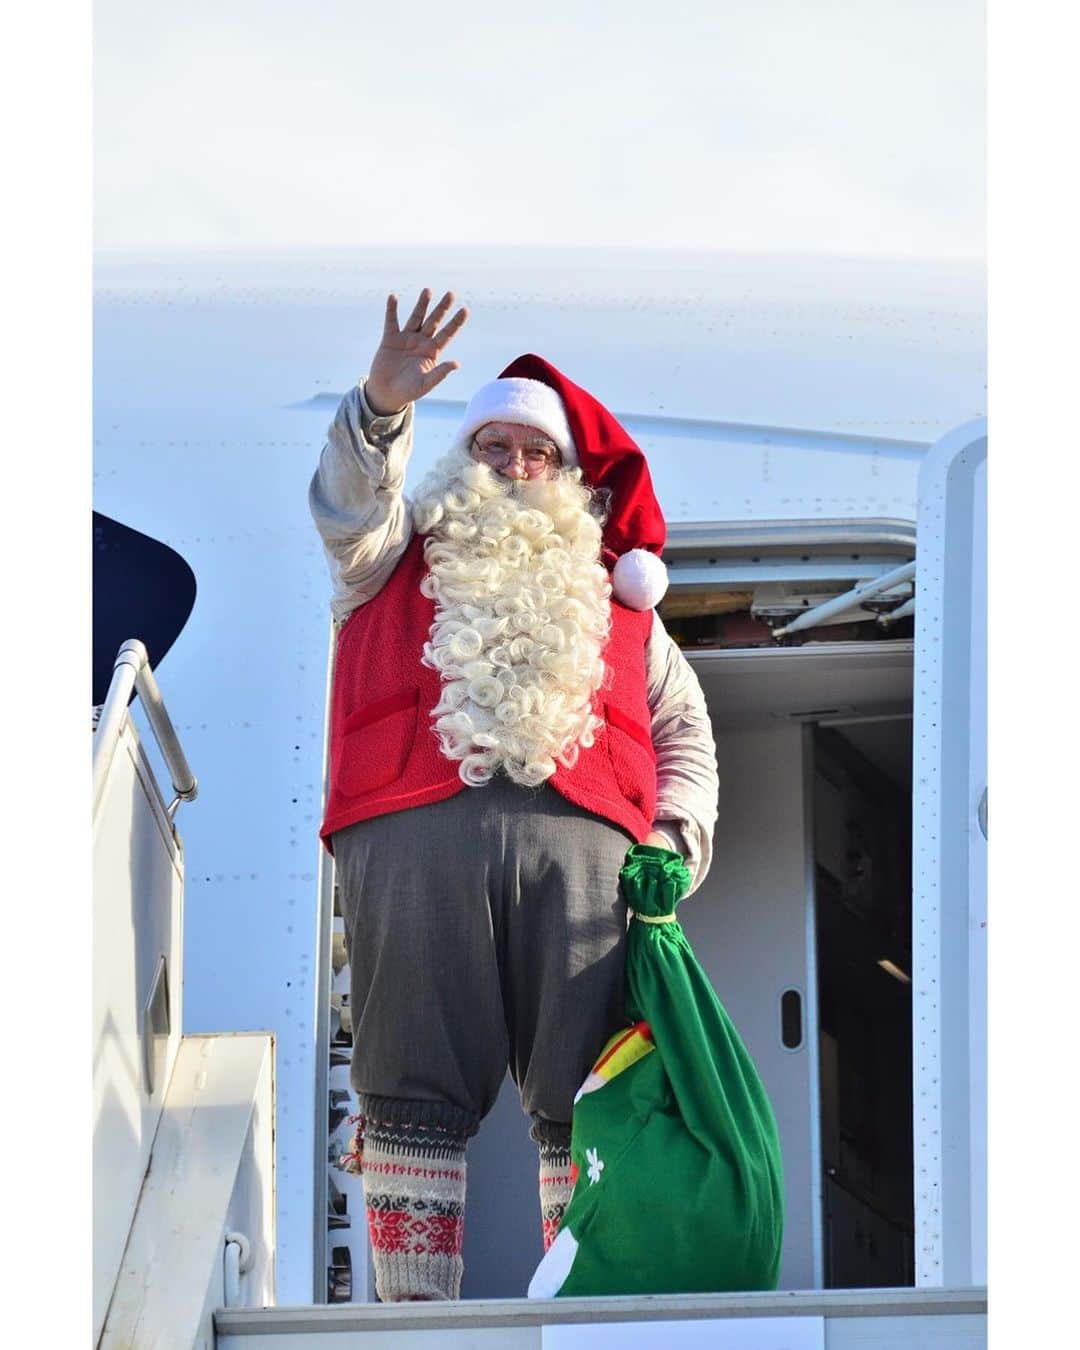 代官山 蔦屋書店　DAIKANYAMA T-SITEのインスタグラム：「． サンタクロース財団公認サンタクロースとの1日限りの撮影会を開催！   クリスマスを待ちきれないサンタさんが、フィンエアー（フィンランド航空）に乗って日本にやってきます！  フィンエアーは、サンタクロースのオフィシャルエアラインです。 フィンランドのサンタクロースと記念撮影できるチャンスですので、ぜひご参加ください。   ■日時 12月3日（日）   ■撮影時間 ①11:30～12:15 ②13:30～14:15 ③15:00～15:45 ④16:00～16:45 （1組4名様まで）   ■場所 1号館2階キッズフロア　特設スペース   ■参加条件 ・予約不要、当日直接会場にお越しください。 ・撮影時間の15分前から受付・整列を開始いたします。 ・定員に達した場合、受付終了といたします。 ・混雑状況により、整理券を配布する場合があります、当日のスタッフの案内をご確認ください。   【撮影時のお願い】 ・サンタさんのお手伝いをするスタッフがカメラ・携帯電話をお預かりしてお写真を撮ります。 1組につき、1組のカメラまでのご対応となります。 ・事前にオートモードの設定をお願いいたします。プリントサービスは行っておりません。 ・1組あたりの撮影所要時間の目安は約1分とさせていただきます。   【その他注意事項】 ・イベント内容は、当日の諸事情により変更、中止になる可能性があります。 ・イベント当日、スタッフのご案内及び注意事項に従わない方がいた場合、イベントが中止になる恐れがあります。予めご了承ください。  #代官山蔦屋書店 #daikanyamatsutaya  #絵本 #クリスマス #サンタクロース #撮影会」